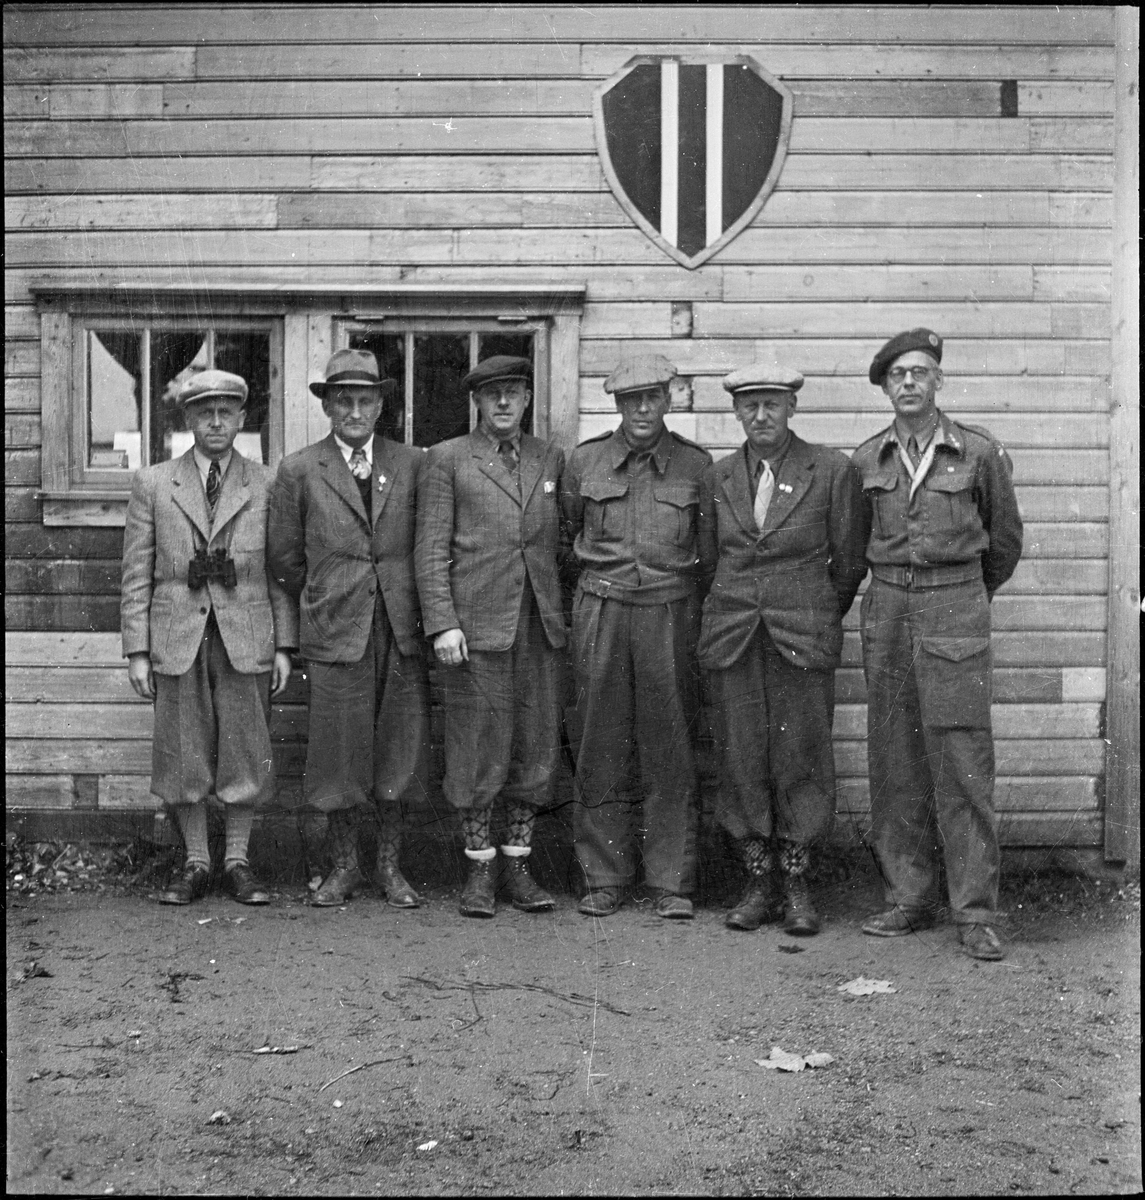 Seks menn står under logoen til Egersund skytterlag på Nyeveien. To har på militær- eller heimevernsuniform.